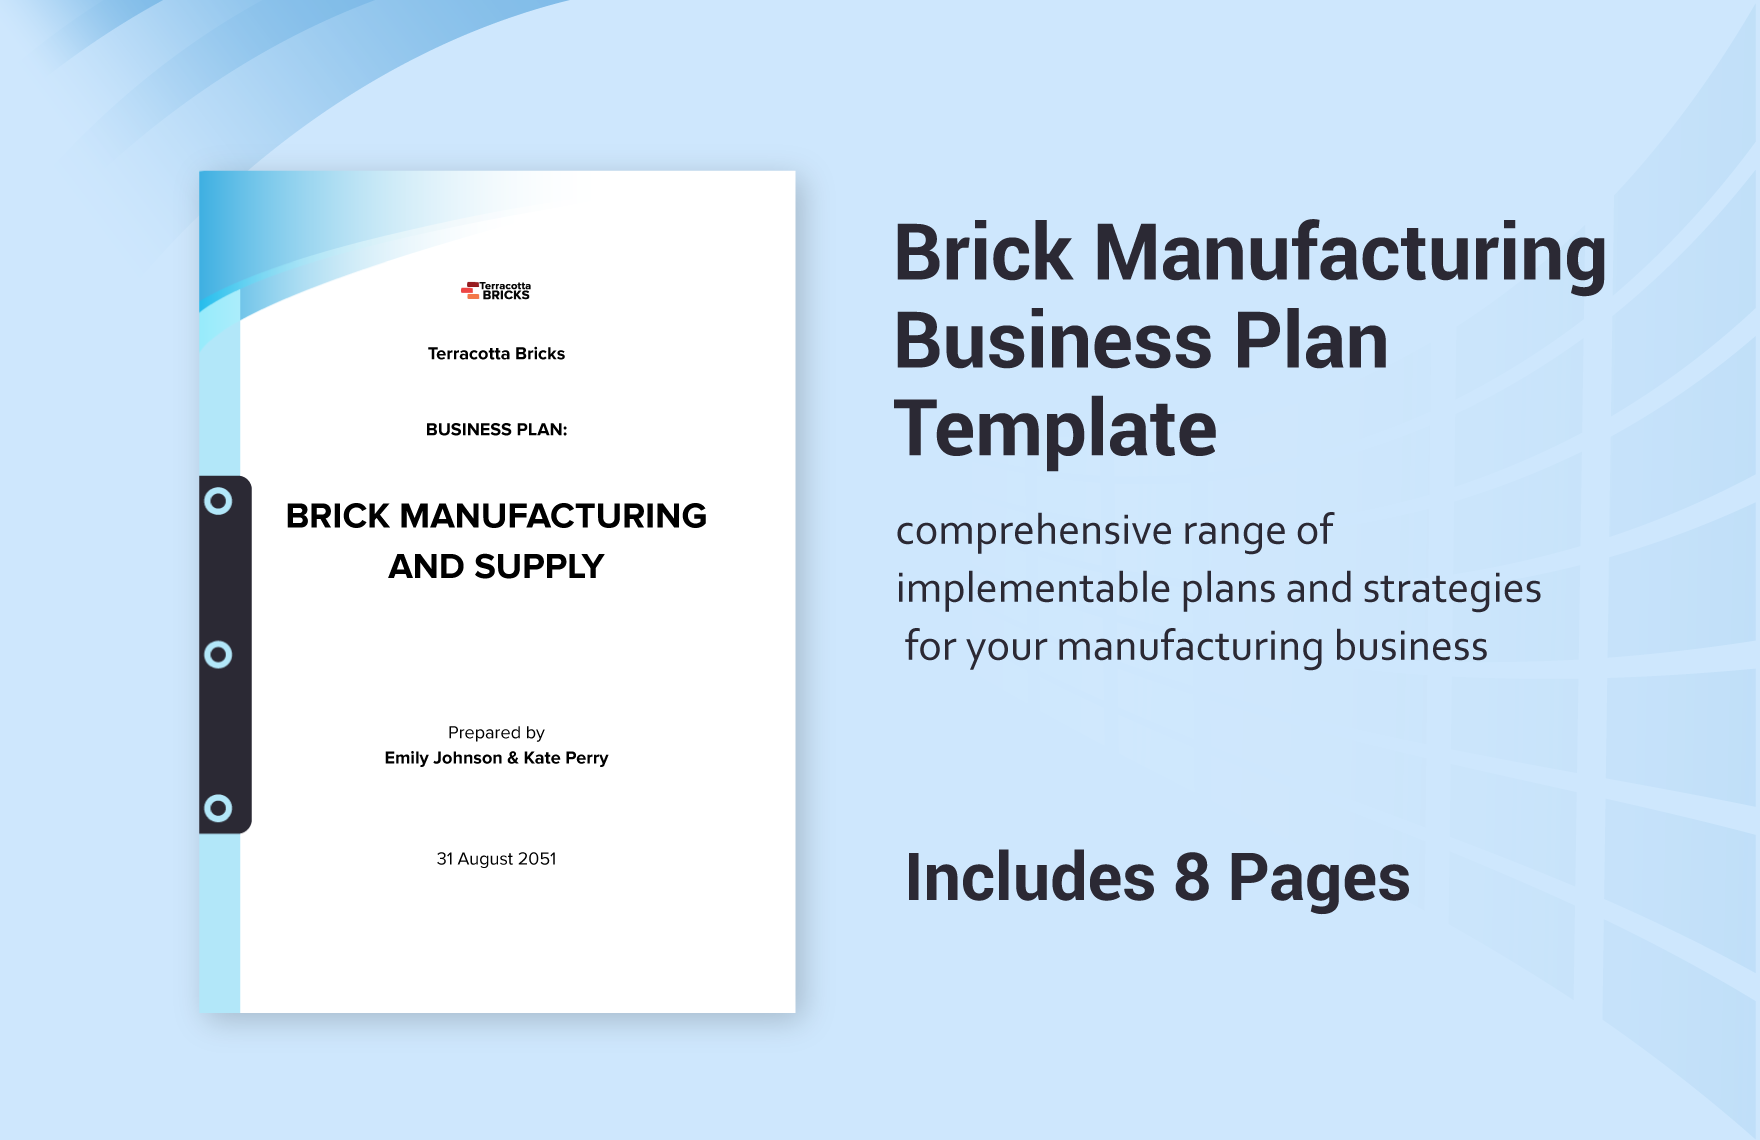 business plan brick manufacturing